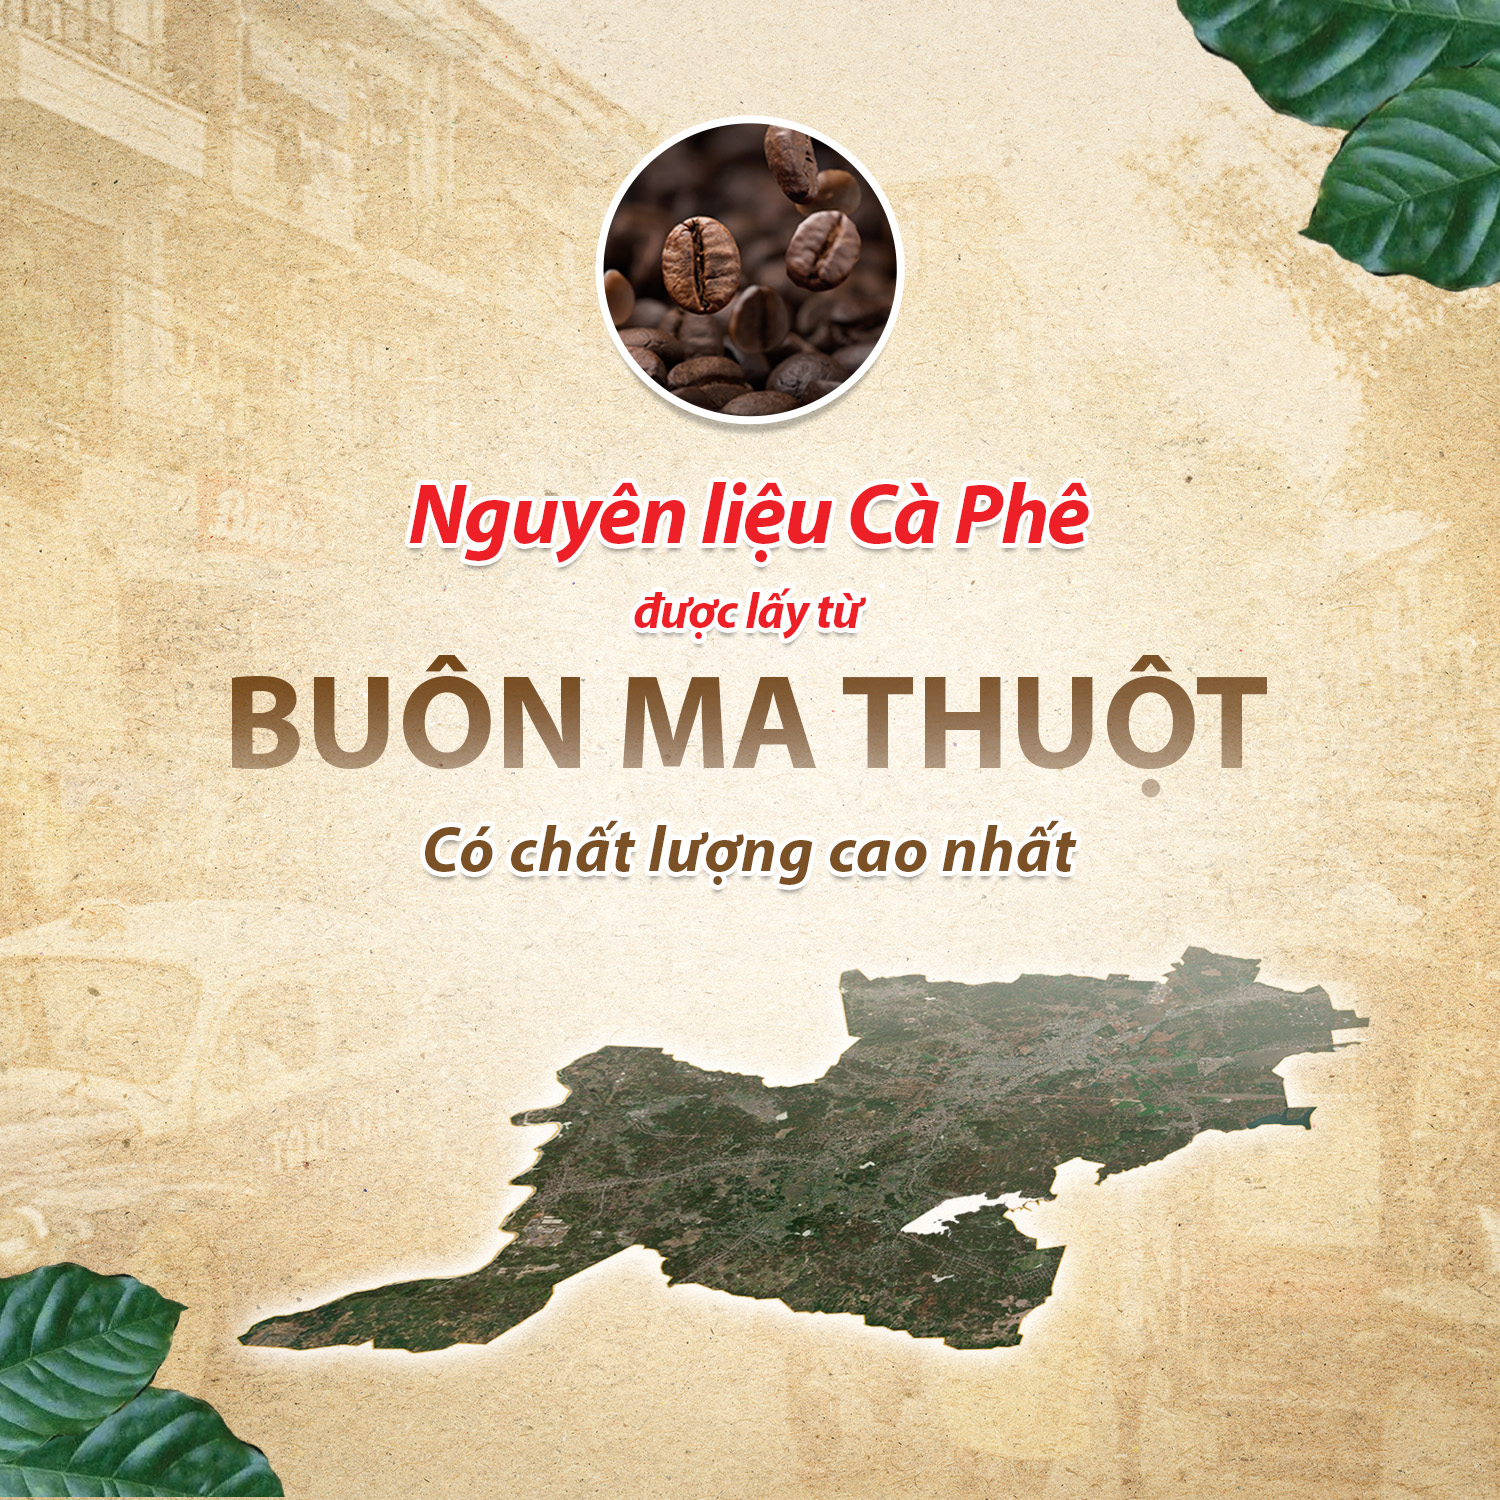 Cà Phê Sữa Rang Xay Hòa Tan 3IN1 LOVE’IN SAIGON CAFE - Khánh Hòa NutriFoods Thơm Ngon Hơn, Đậm Đà Hơn (Túi 18 gói x 18g)